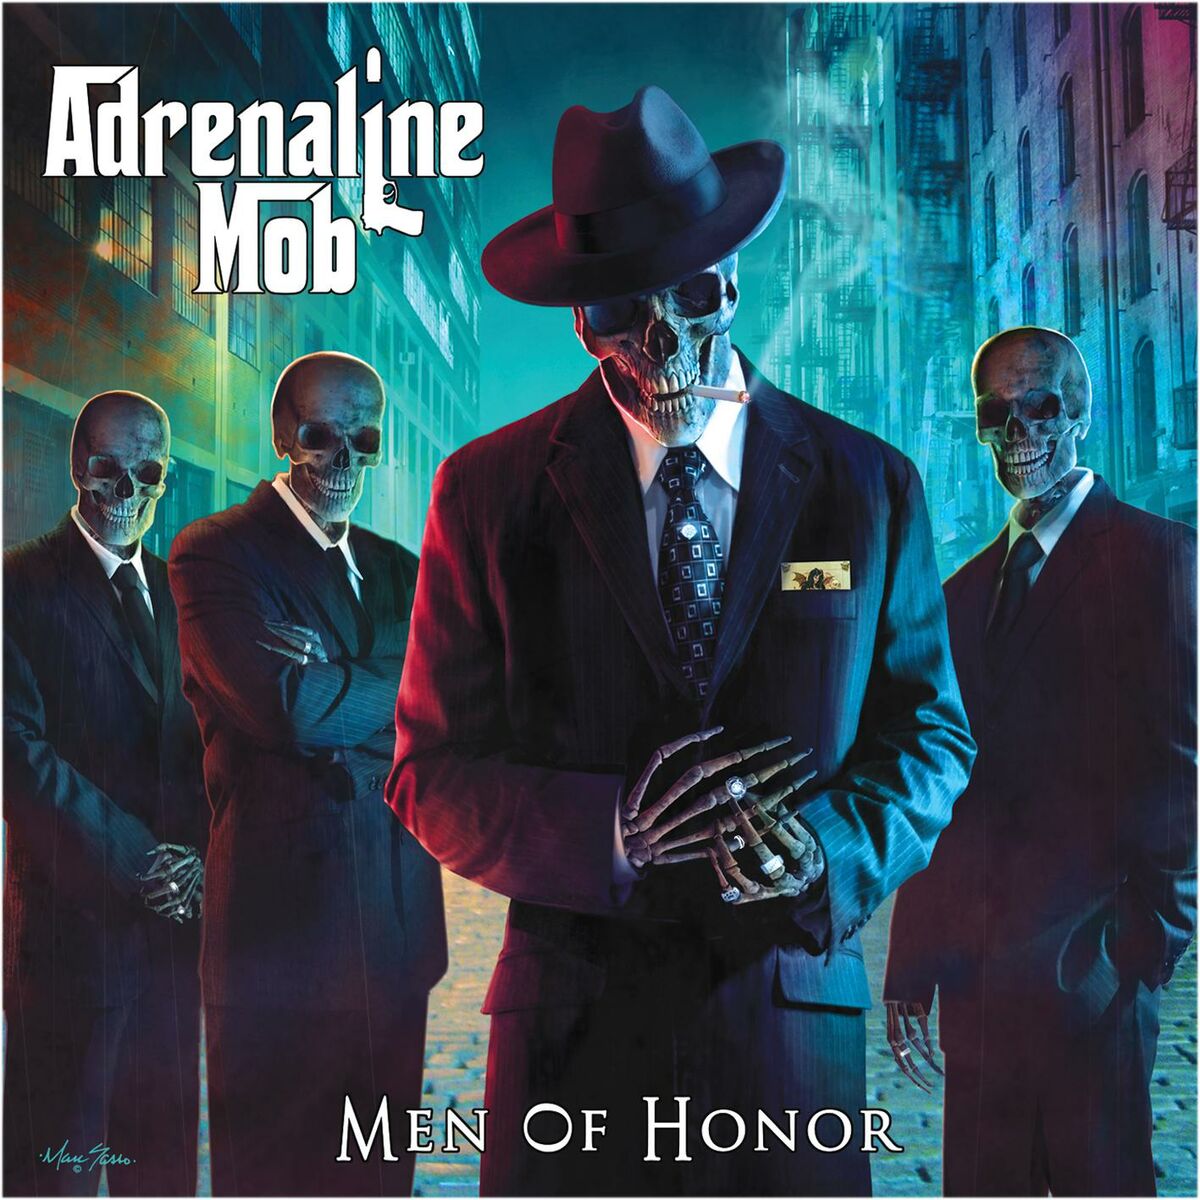 Adrenaline Mob: albums, songs, playlists | Listen on Deezer